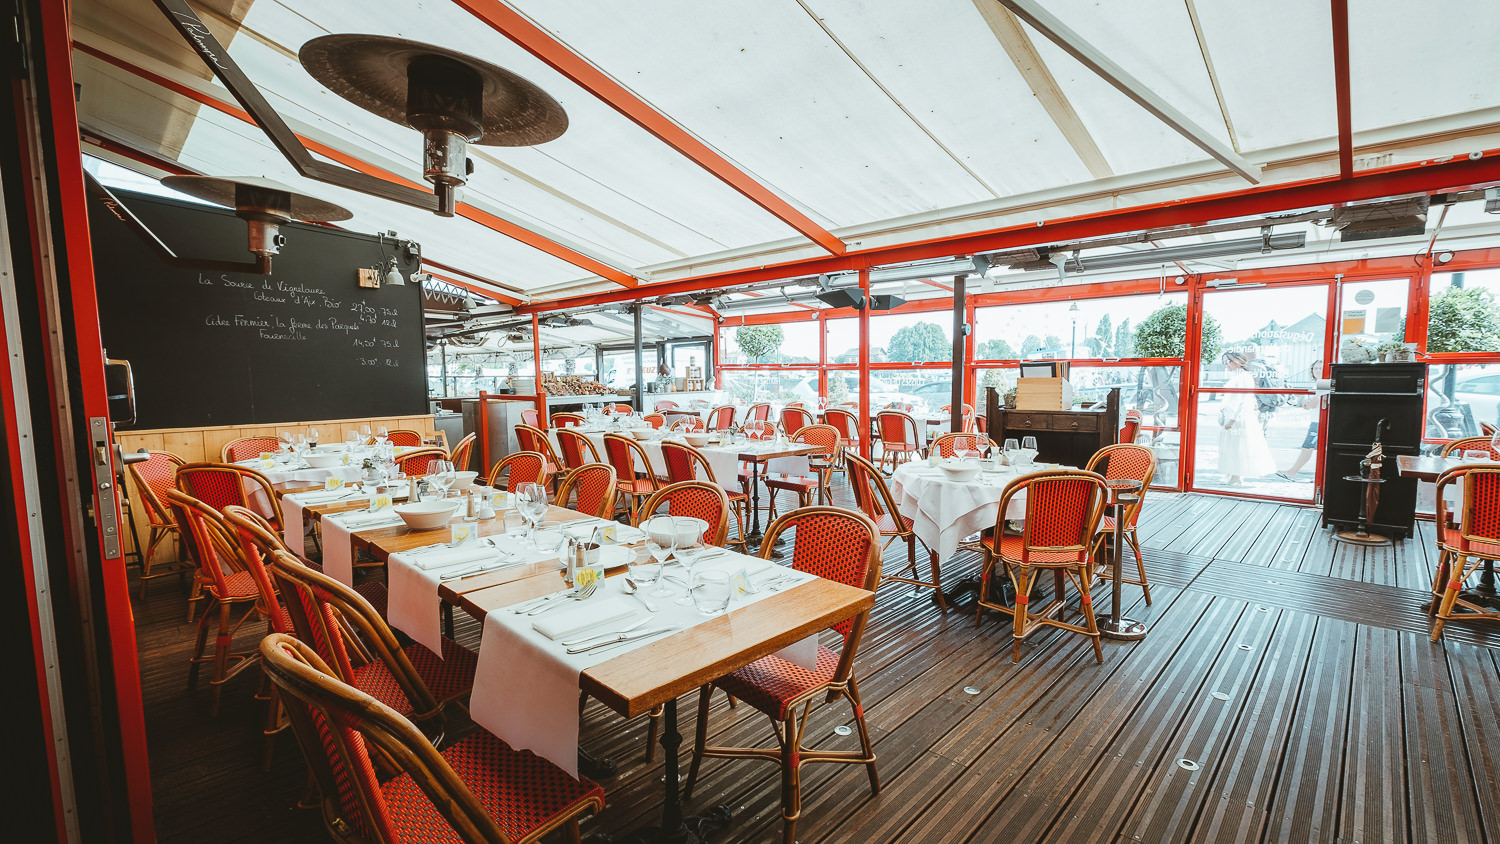 0002-restaurant-la grenouille-honfleur-20190717111654.jpg